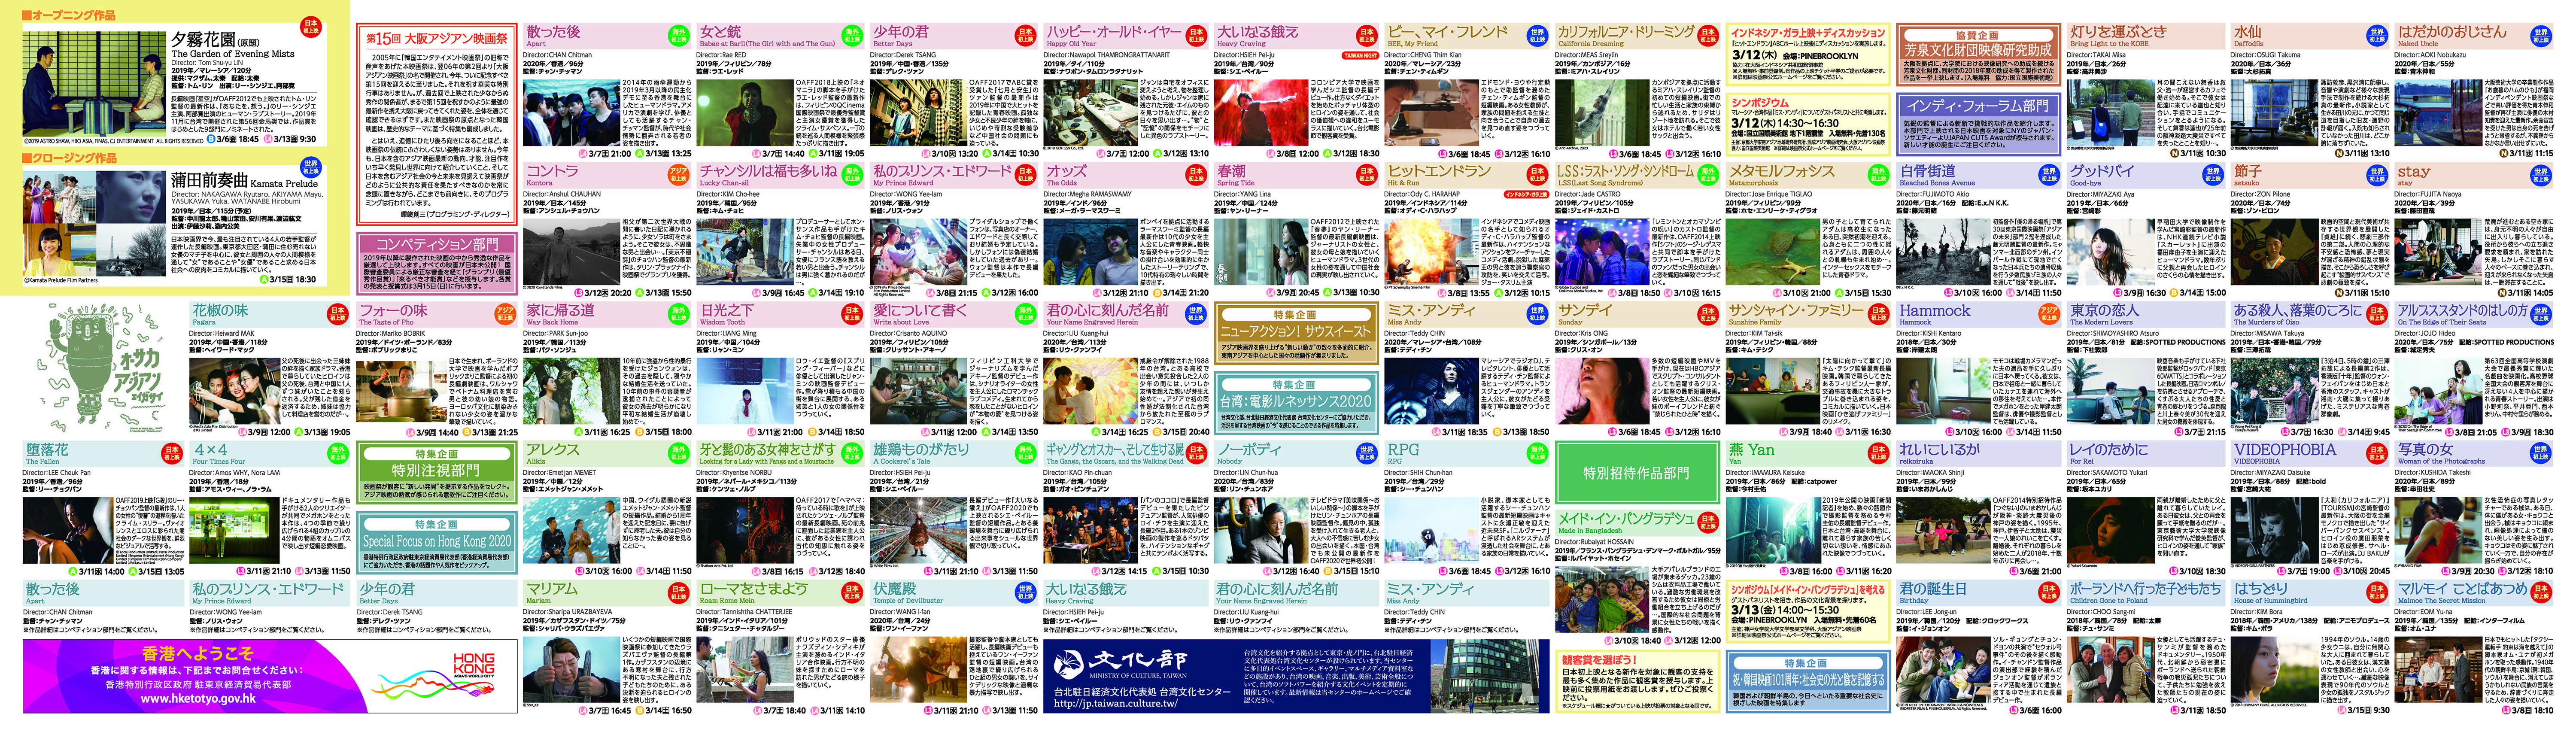 第15回 大阪アジアン映画祭（大阪市経済戦略局 文化課）